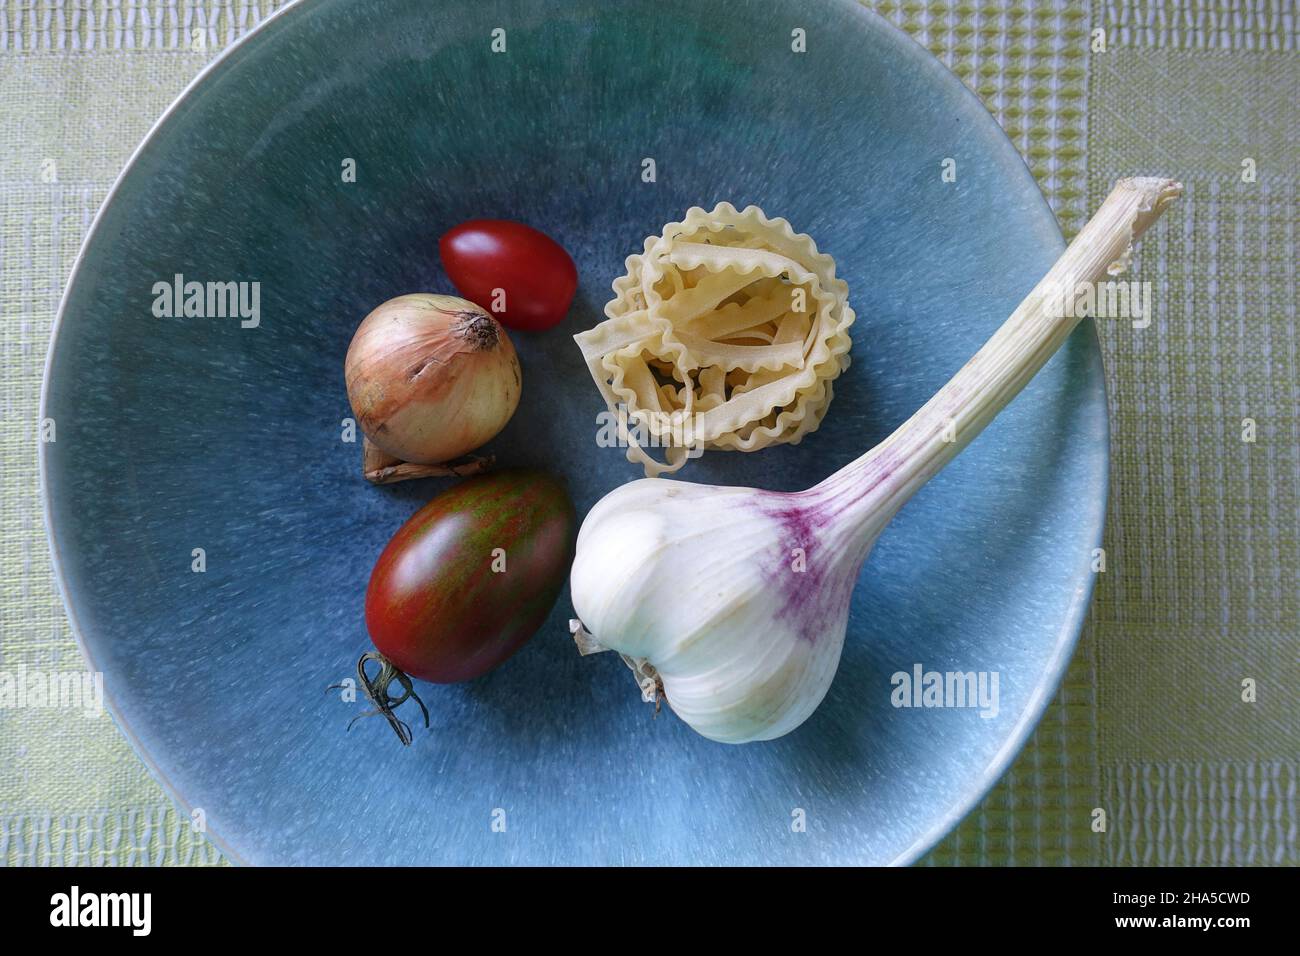 Knoblauch, Gemüse und Nudeln sind in einem blauen Teller. Zutaten für eine köstliche Pasta-Gericht. Stockfoto